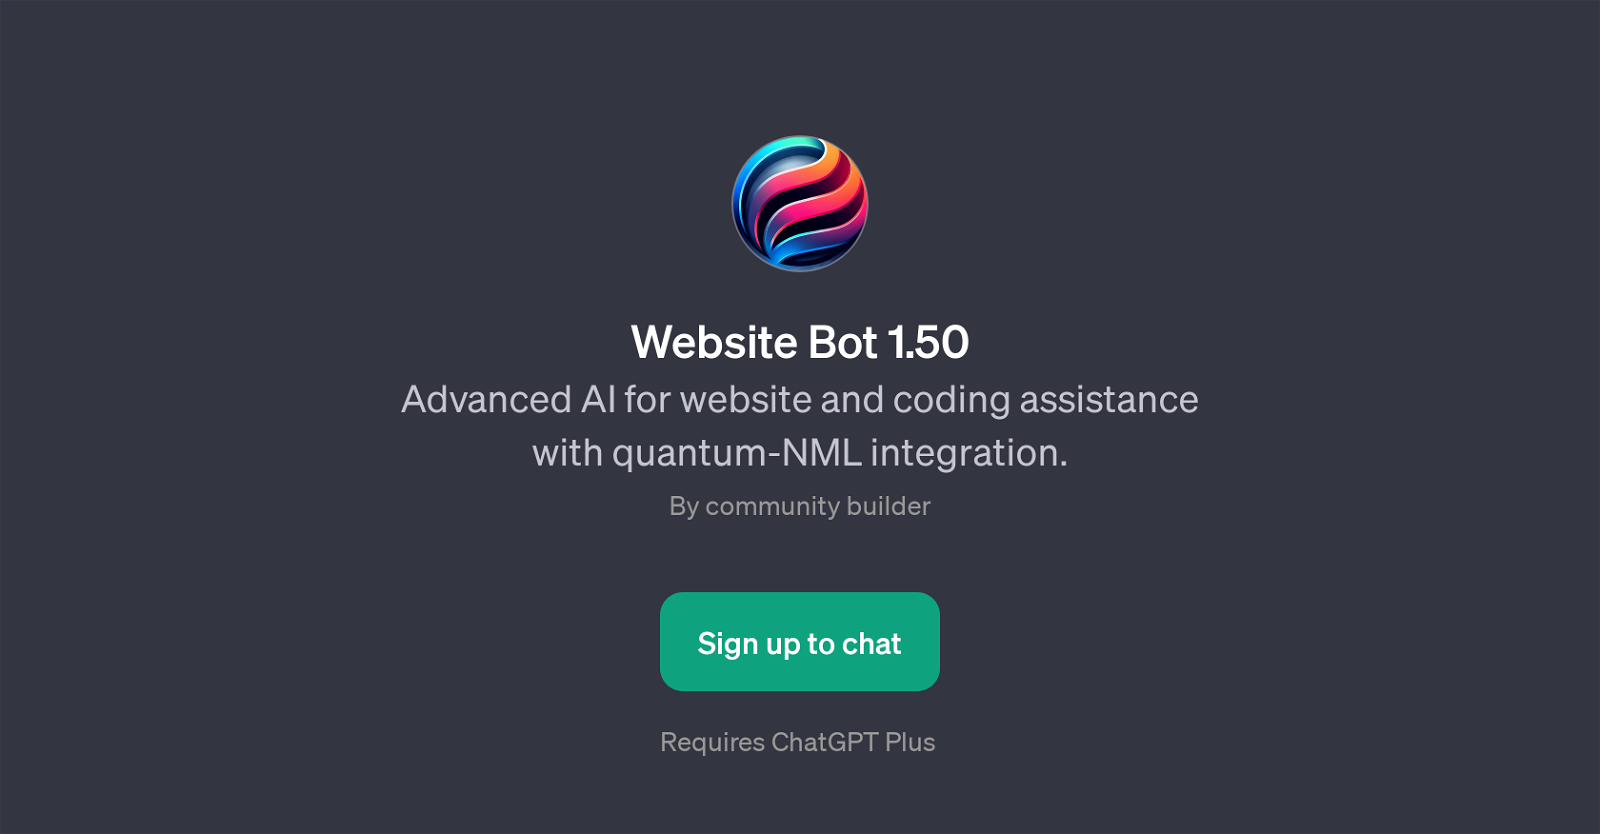 Website Bot 1.50 website